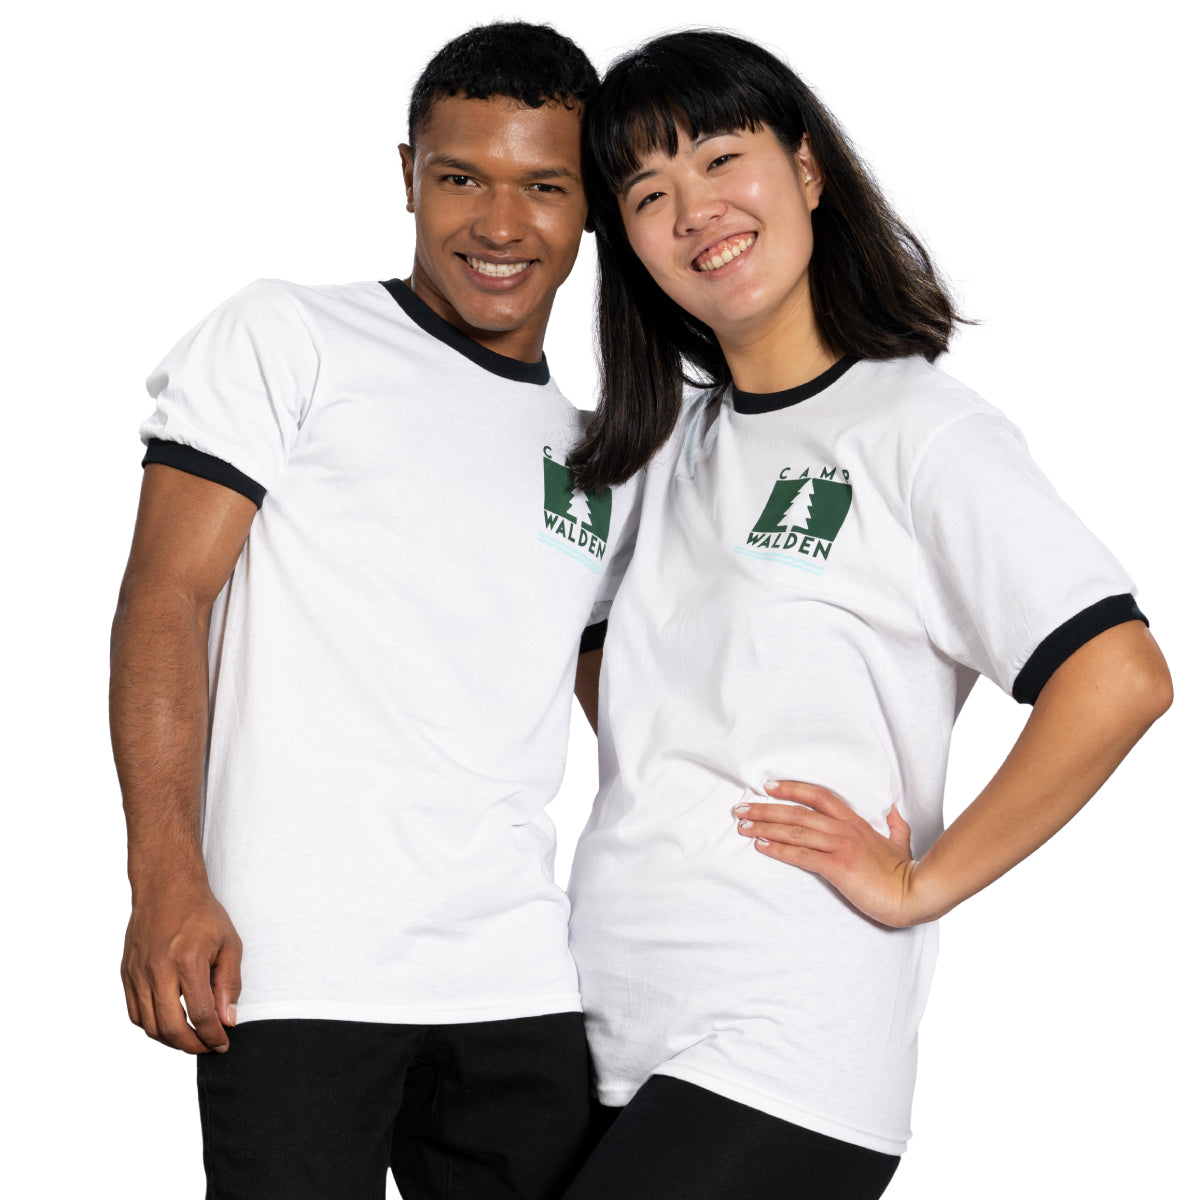 Camp Walden Parent Trap Movie Unisex Costume T-Shirt4 Couples